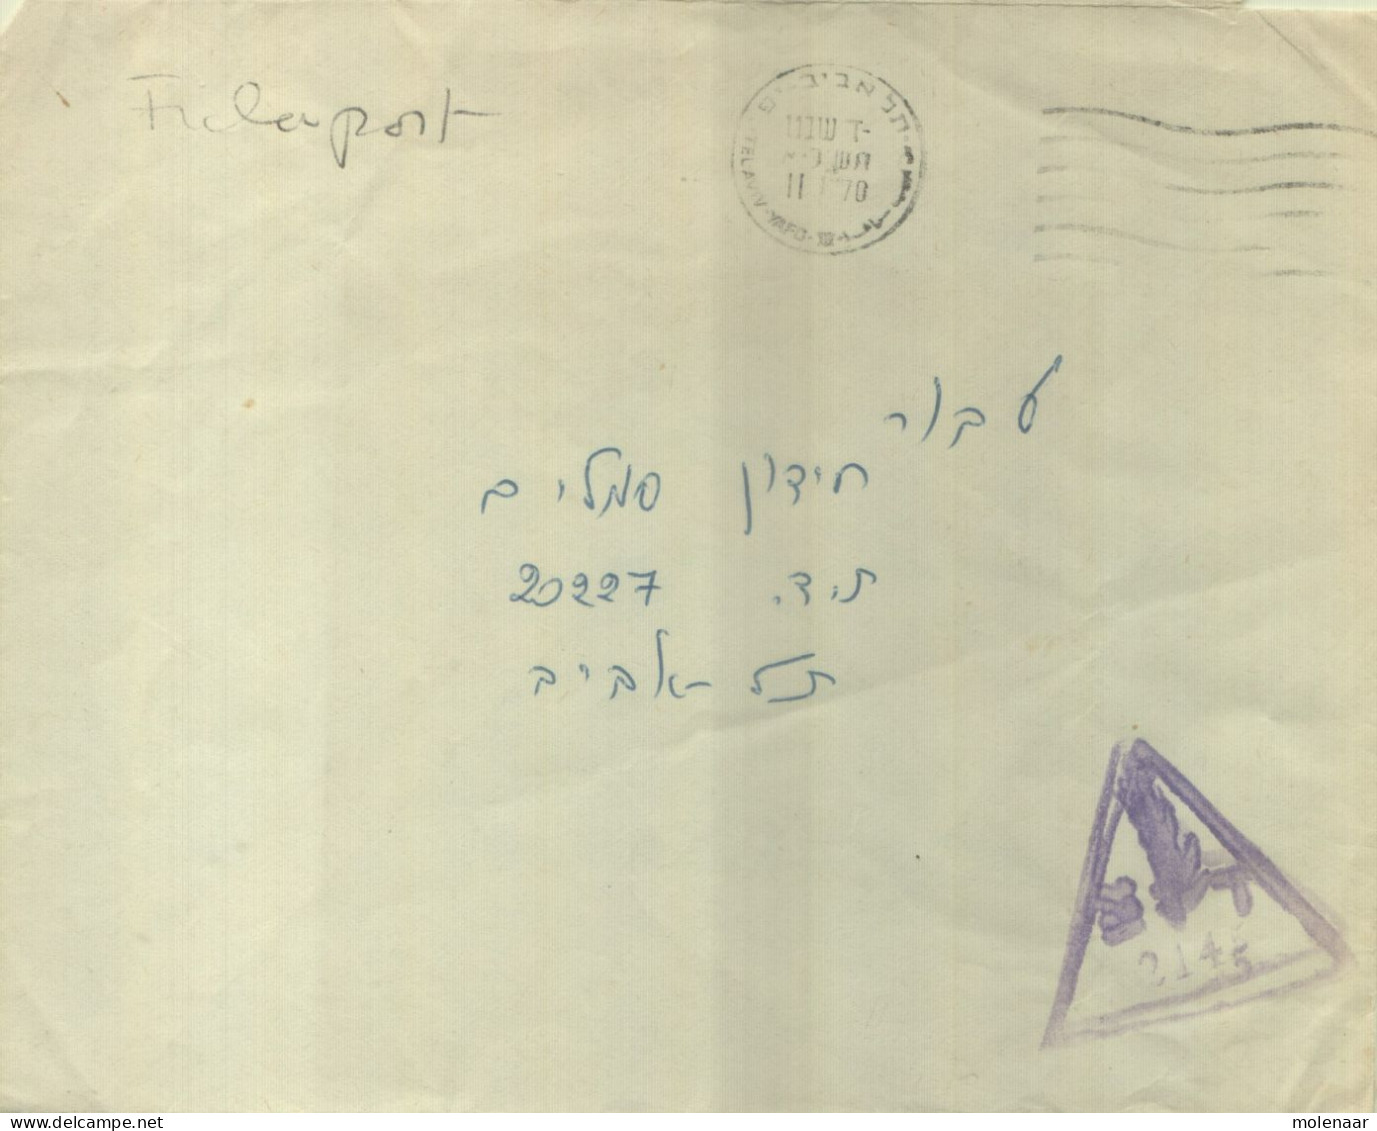 Postzegels > Azië > Israël > 1970-1979 > Brieven En Documenten  Veldpostbrief (16744) - Covers & Documents